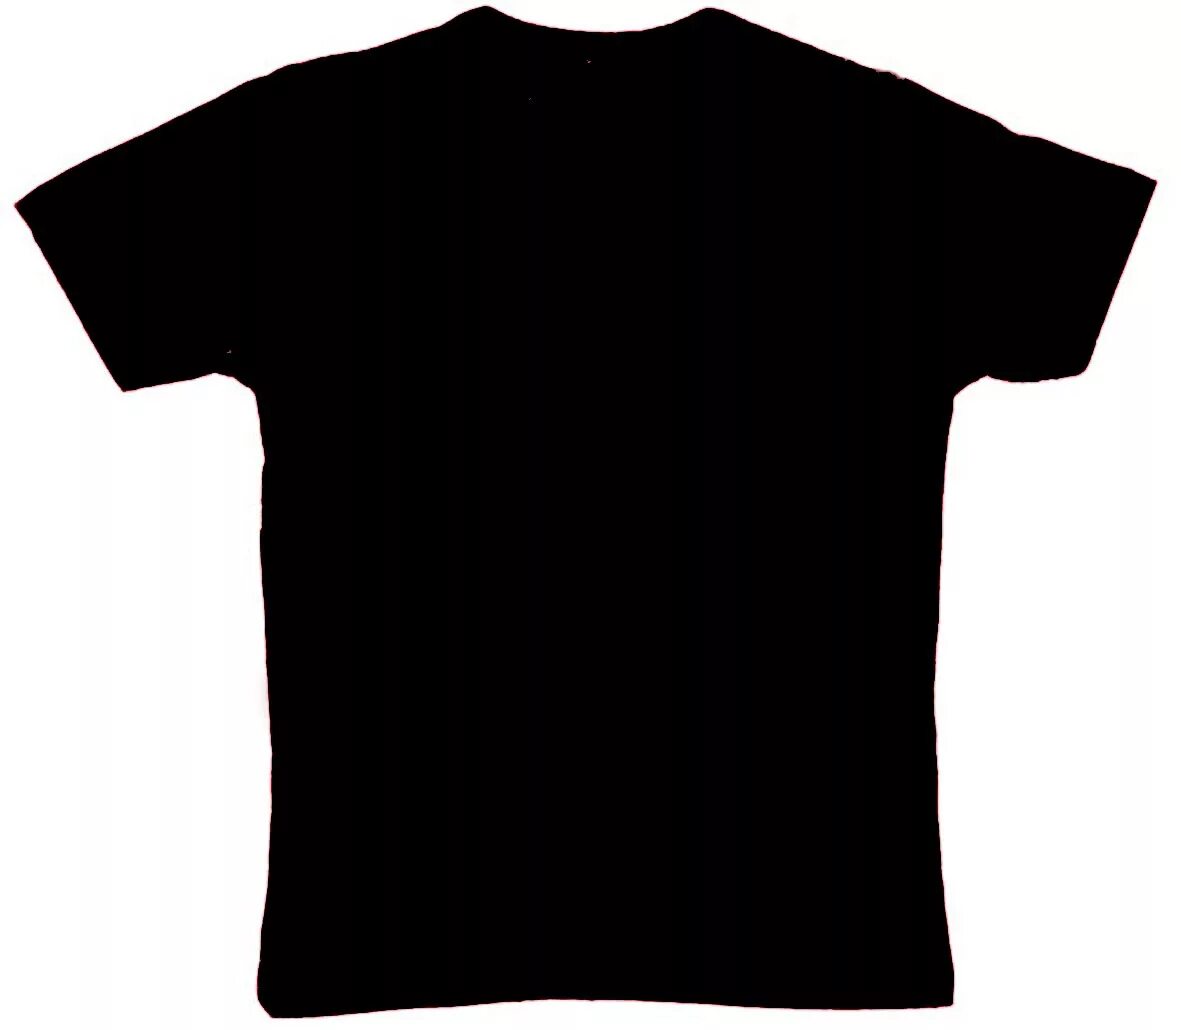 Черная футболка. Черная футболка без фона. Черная футболка на белом фоне. Черная майка.